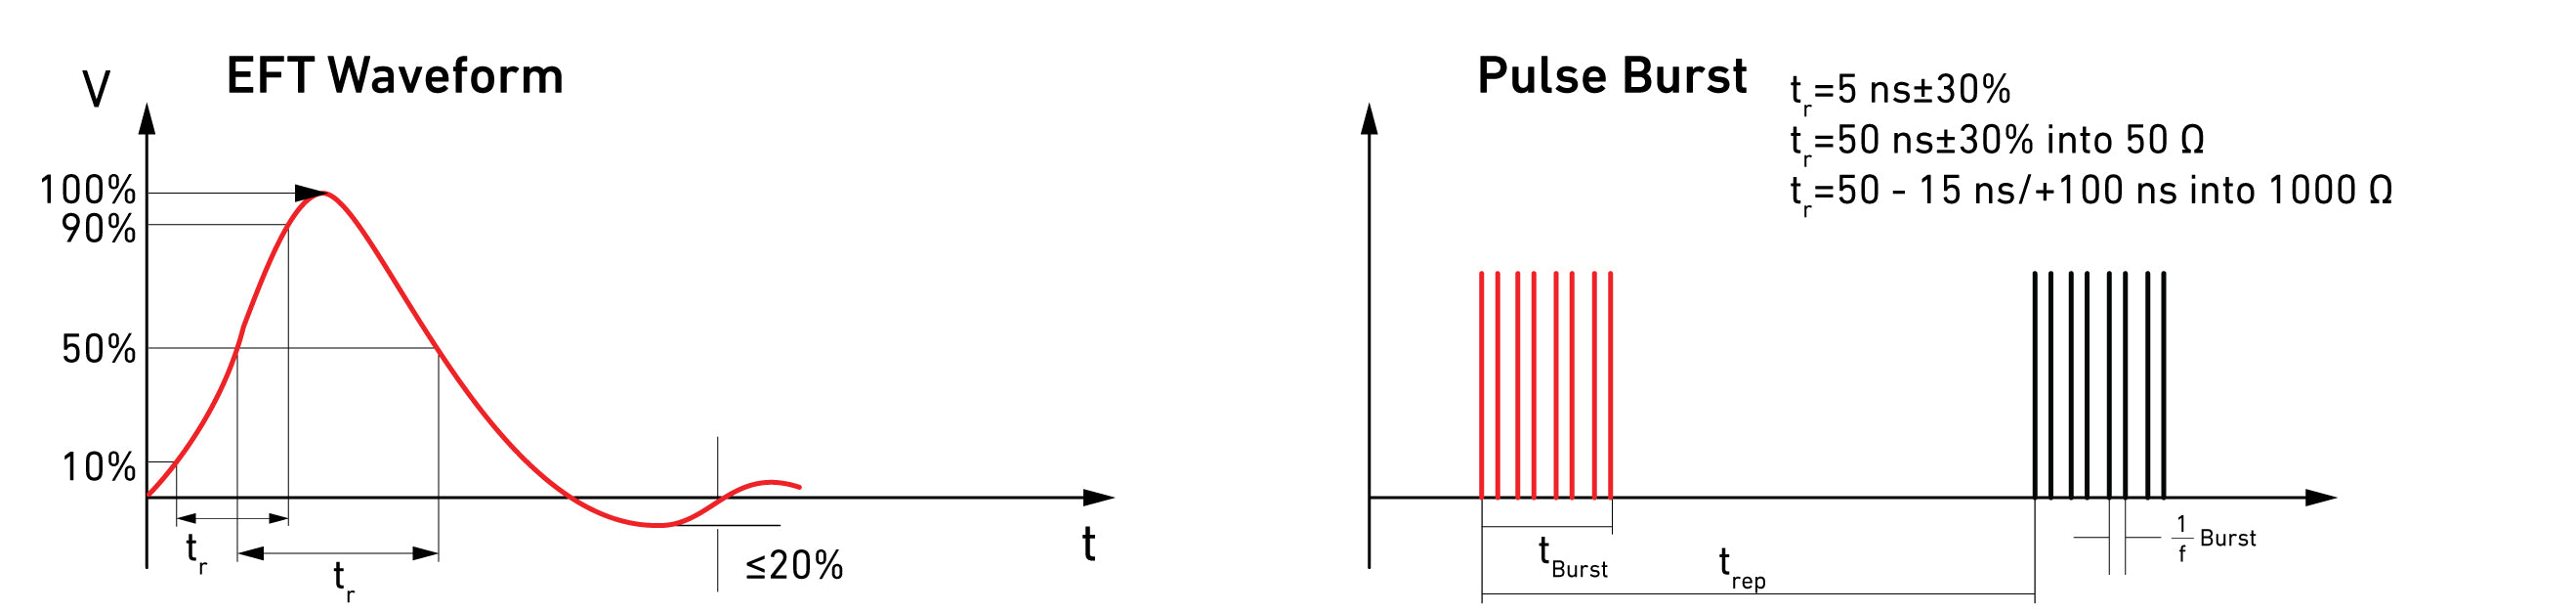 EFT waveform and Pulse Burst